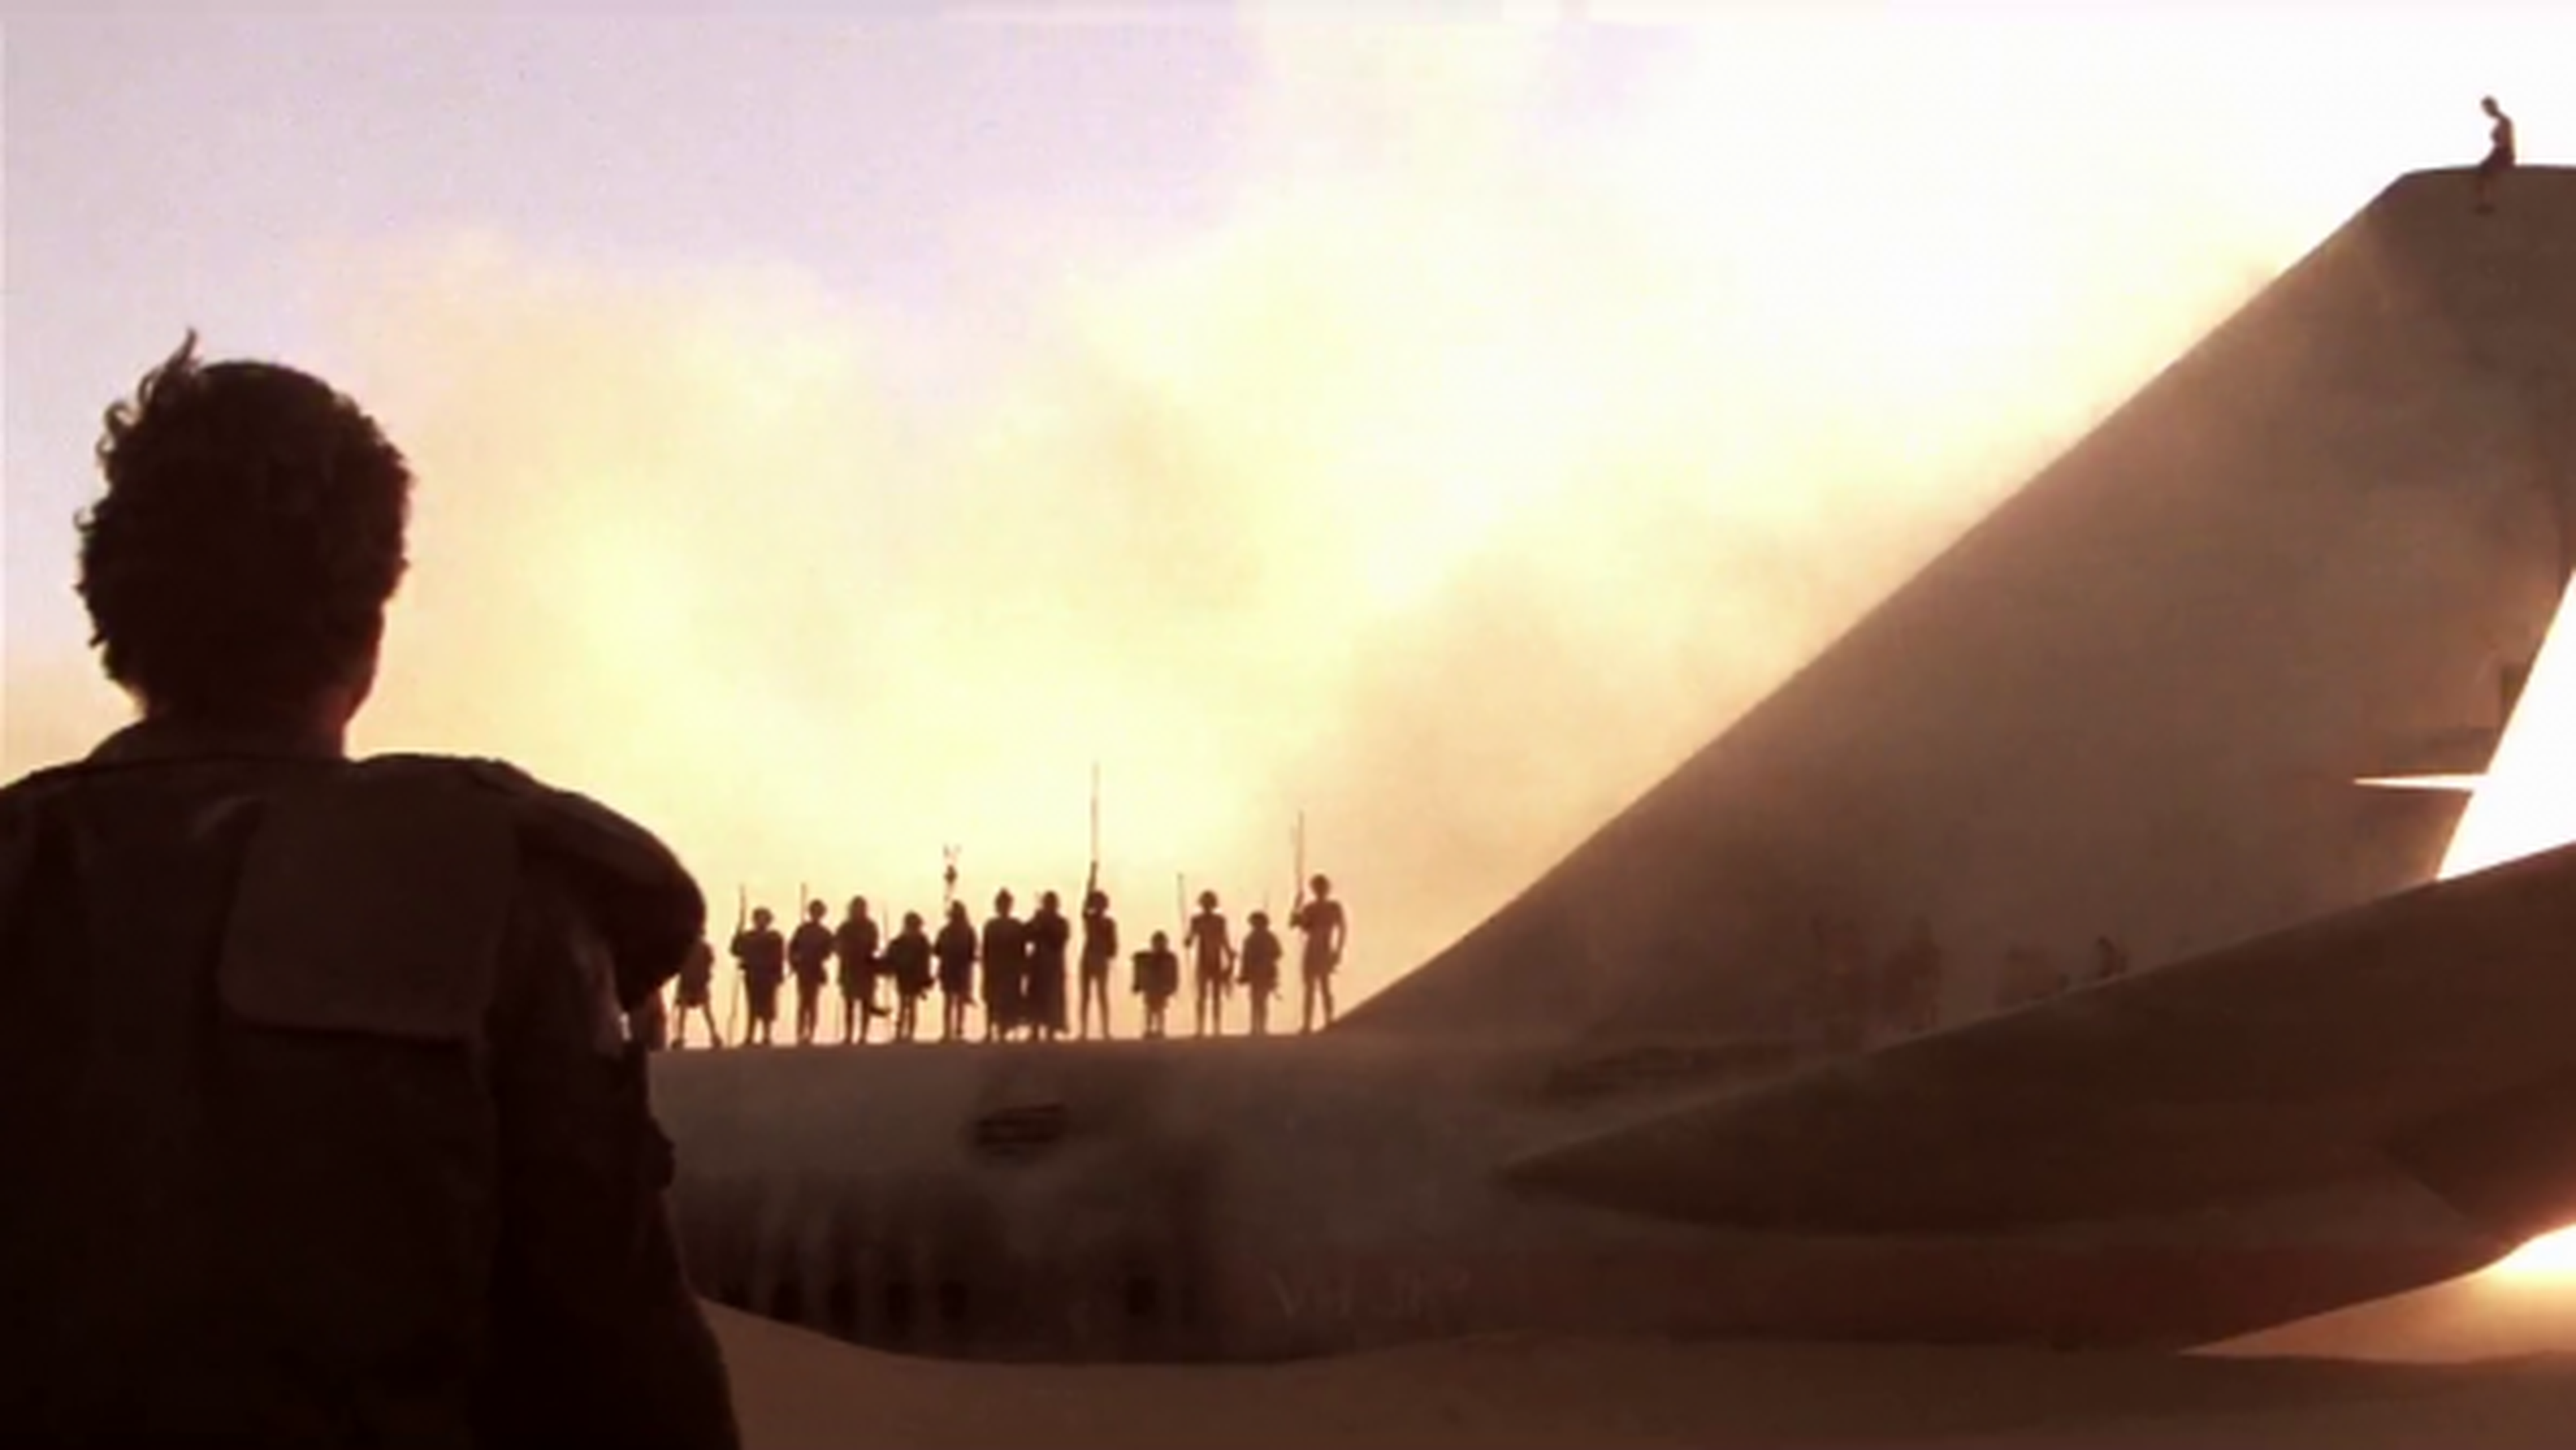 Cine de ciencia ficción: Mad Max, Más allá de la cúpula del trueno